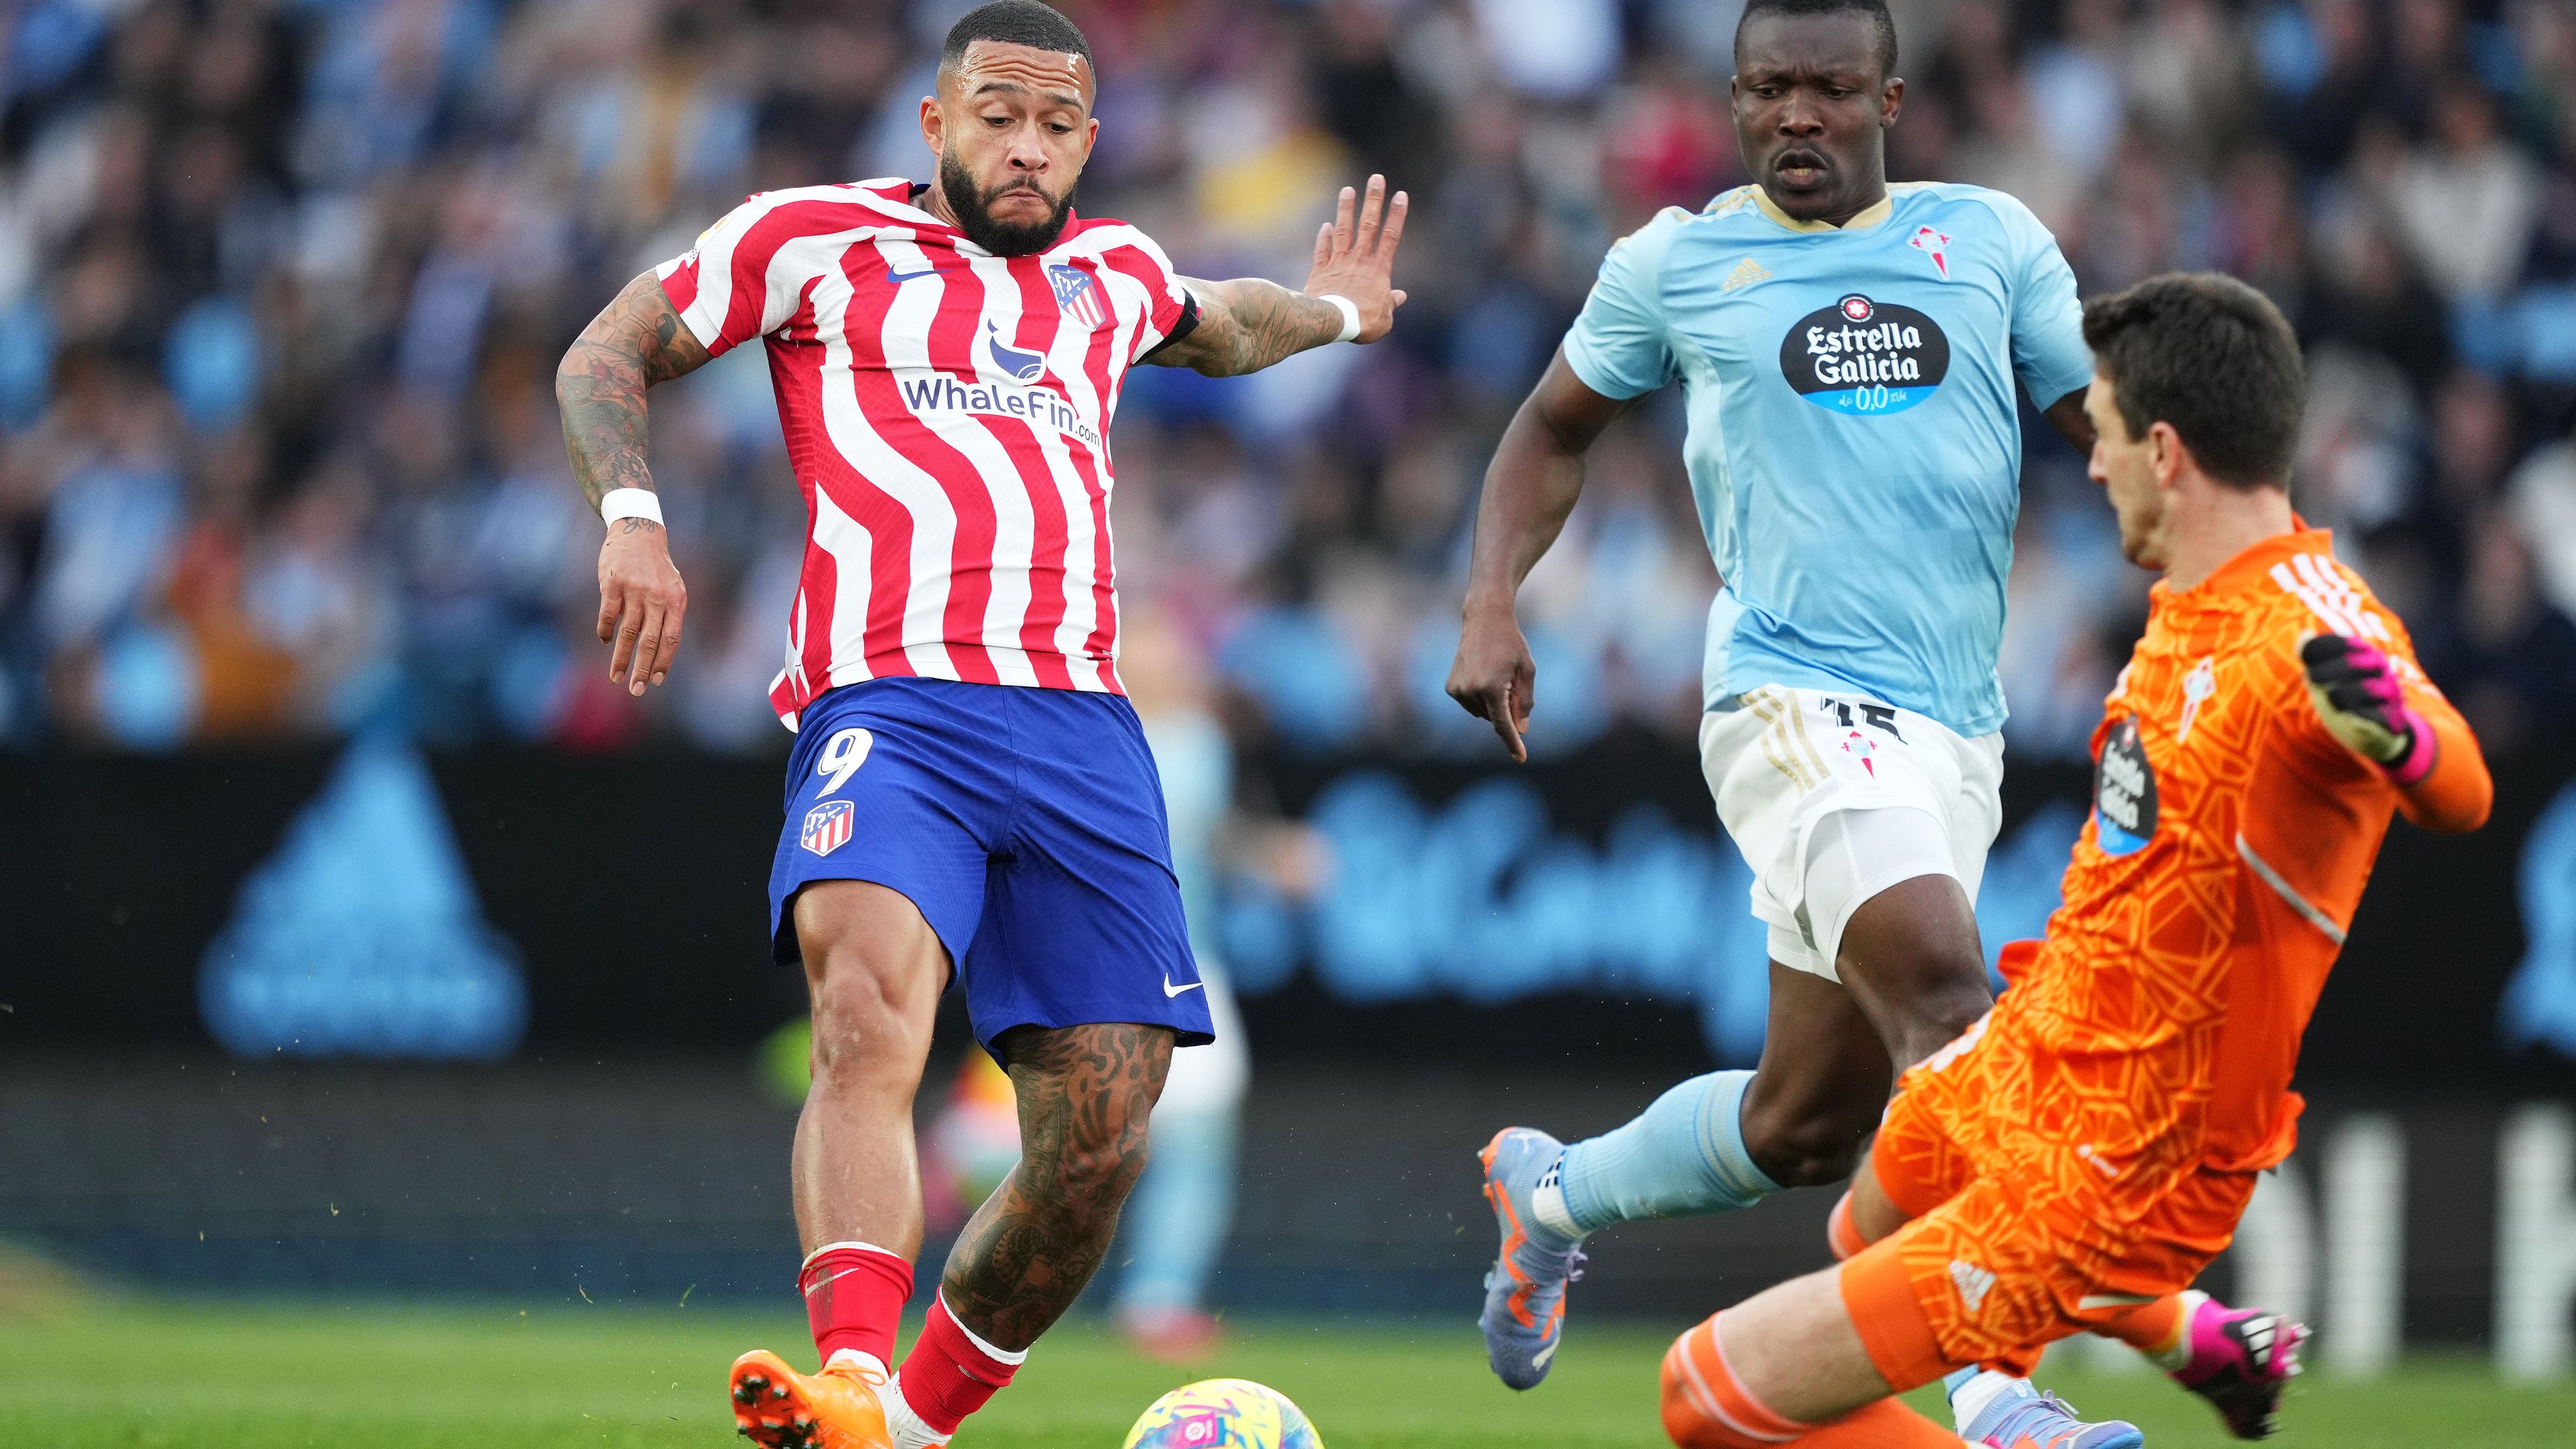 Az utolsó húsz percben emeberelőnyben játszott a Celta Vigo az Atlético ellen, az utolsó előtti percben mégis a fővárosaik szereztek gólt, Memphis Depay volt a nyerőember. Fotó: Getty Images